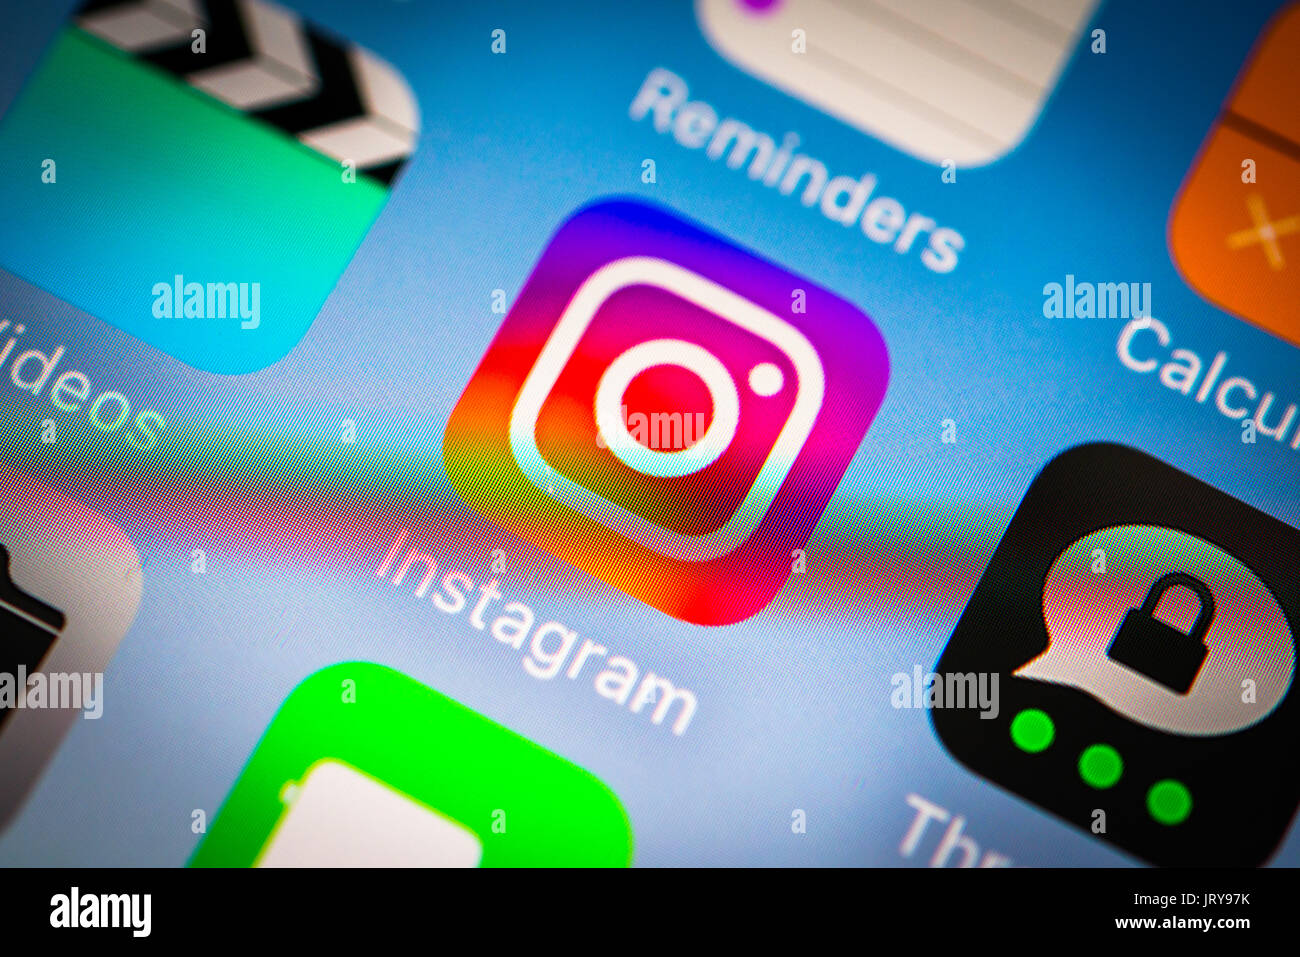 Icona, Logo, Instagram, rete sociale, schermo, iPhone, molte diverse icone di app, app, telefono cellulare, smartphone, iOS Foto Stock